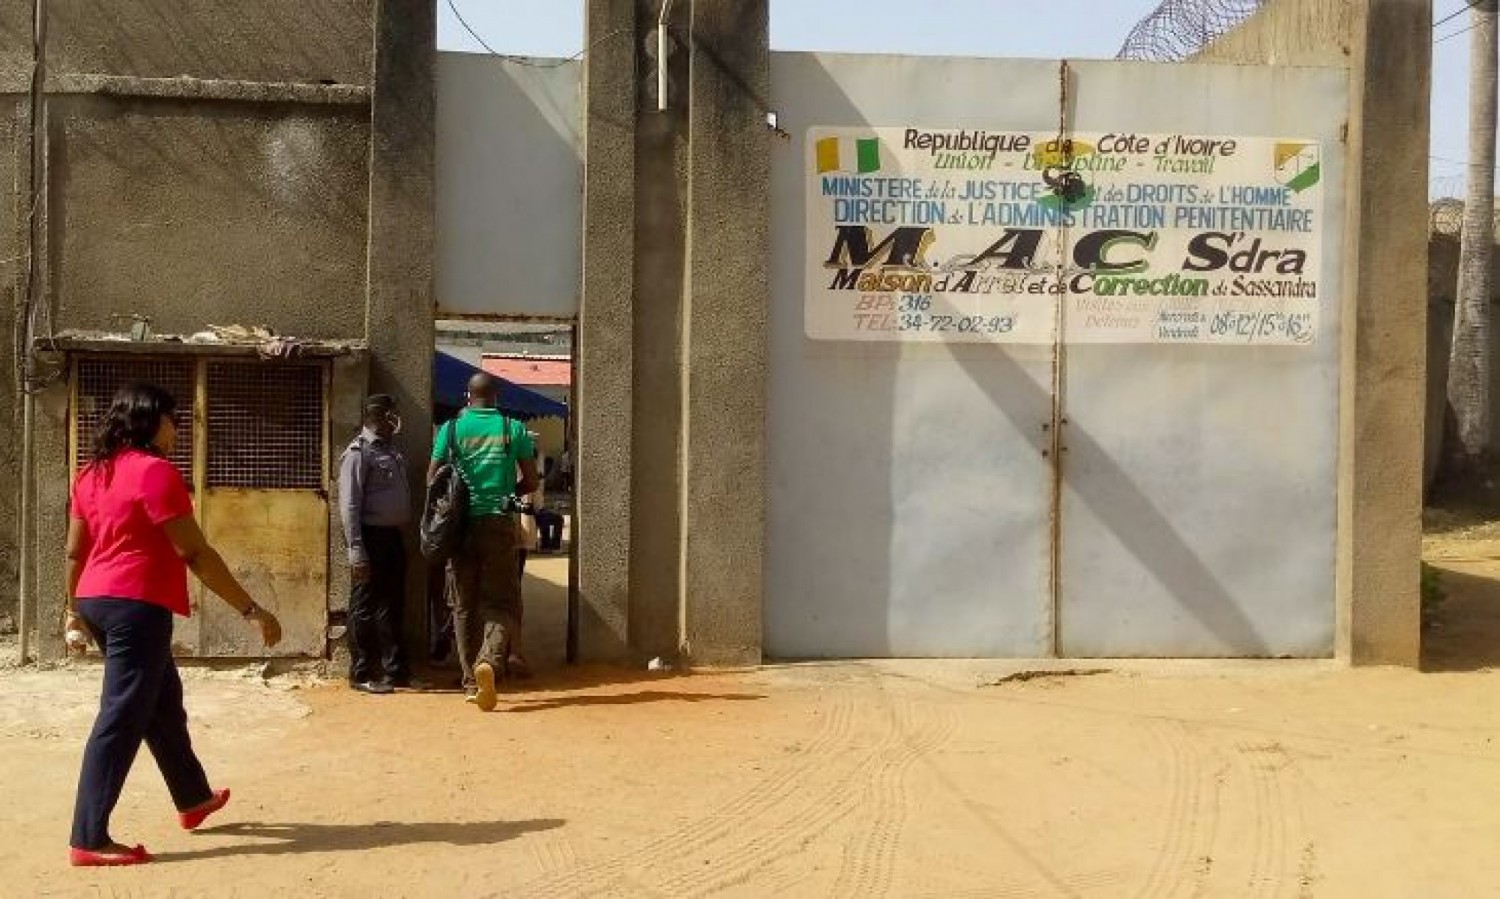 Côte d'Ivoire : Maisons d'arrêt et de correction, plusieurs détentions préventives contraire à la loi, une organisation « il y a beaucoup de dérapages dans nos prisons »